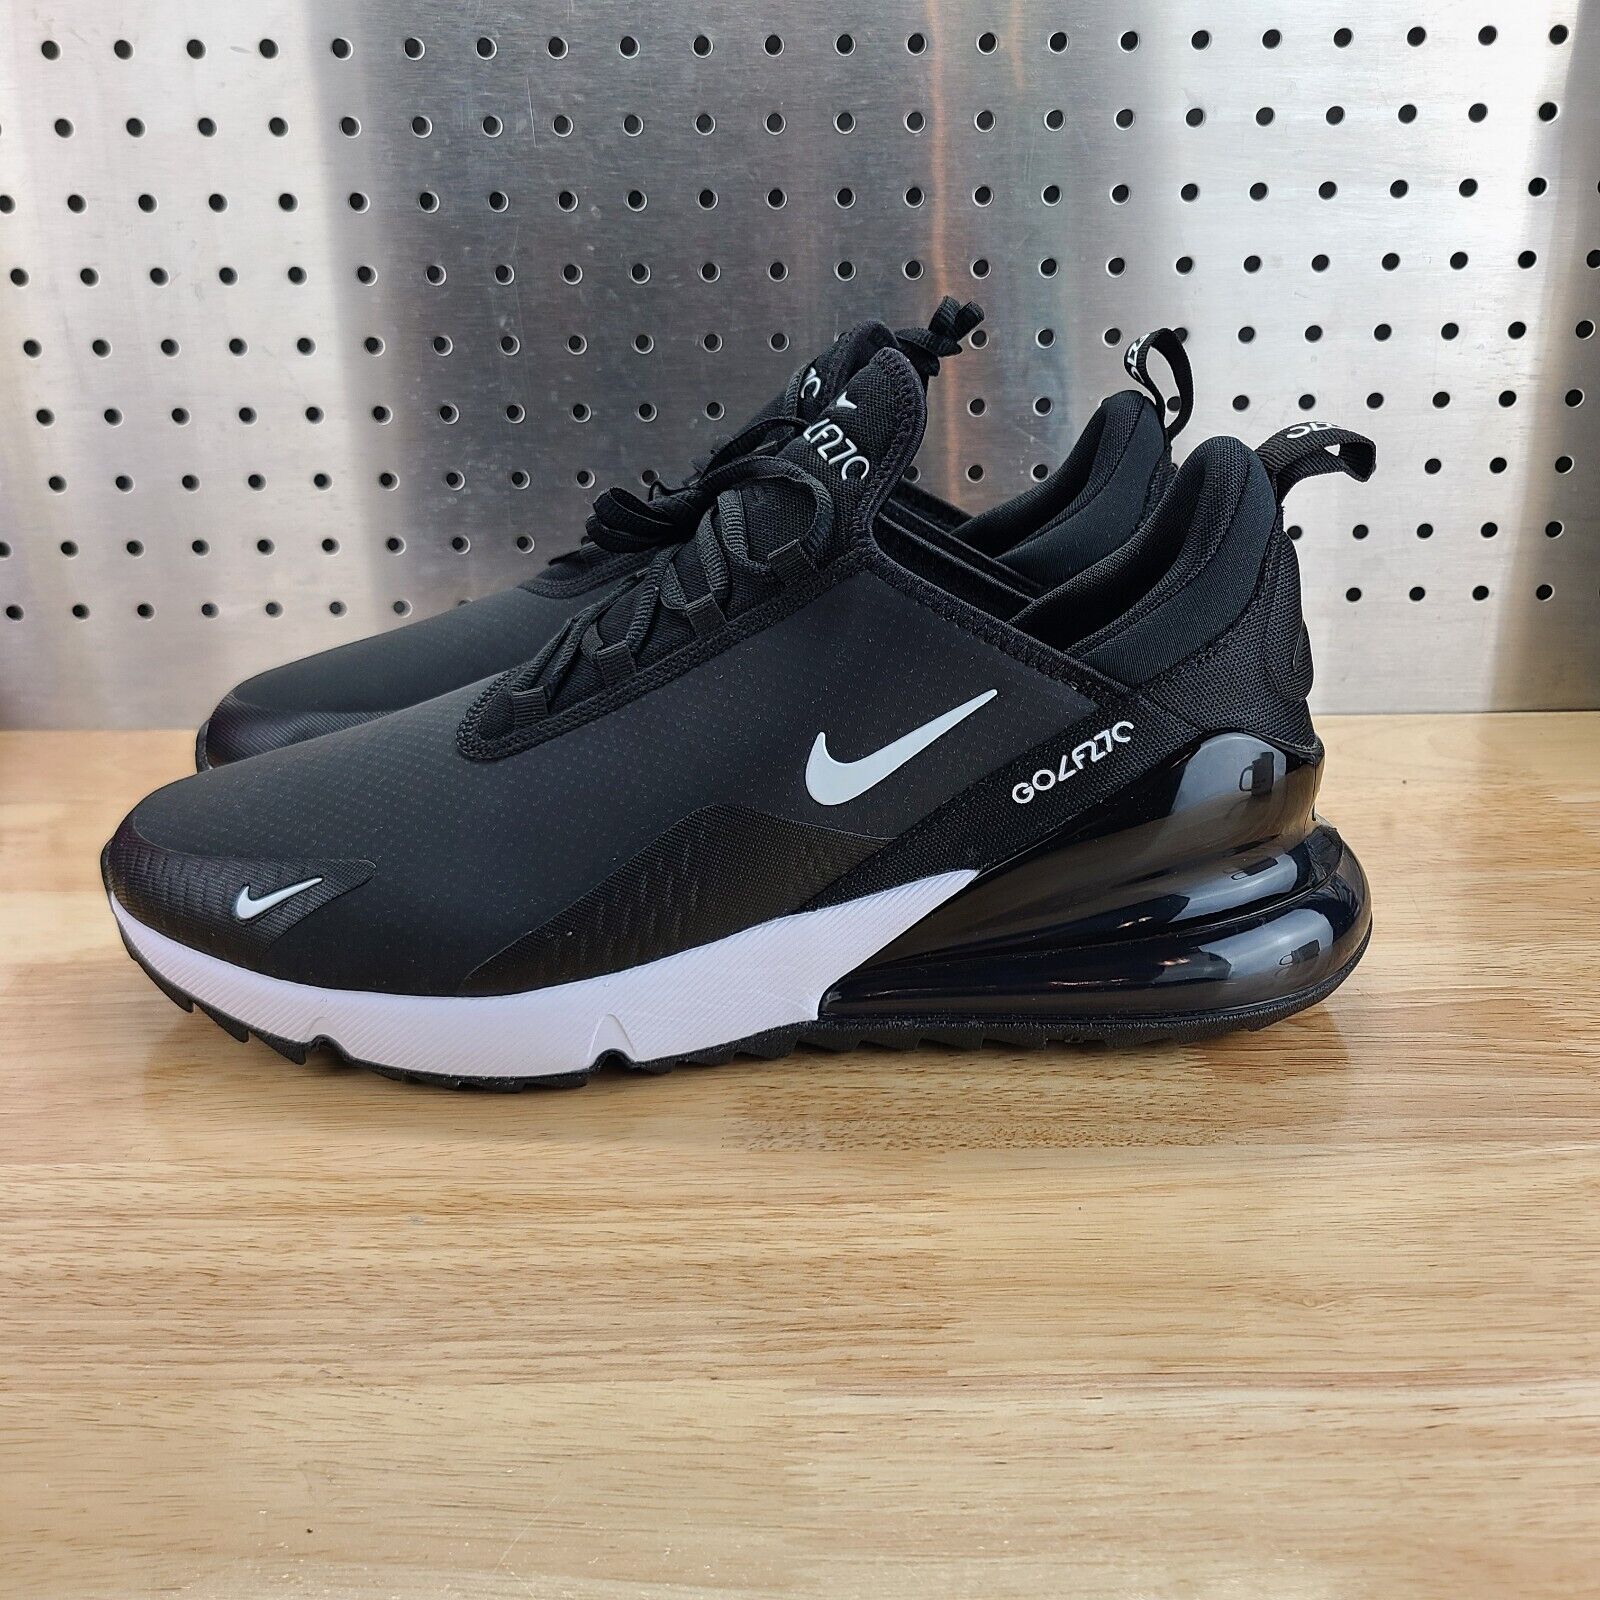 Nike Golf Air Max 270 G Size 13 PGA Tour Style Shoes CK6483 001 Black White  Oreo